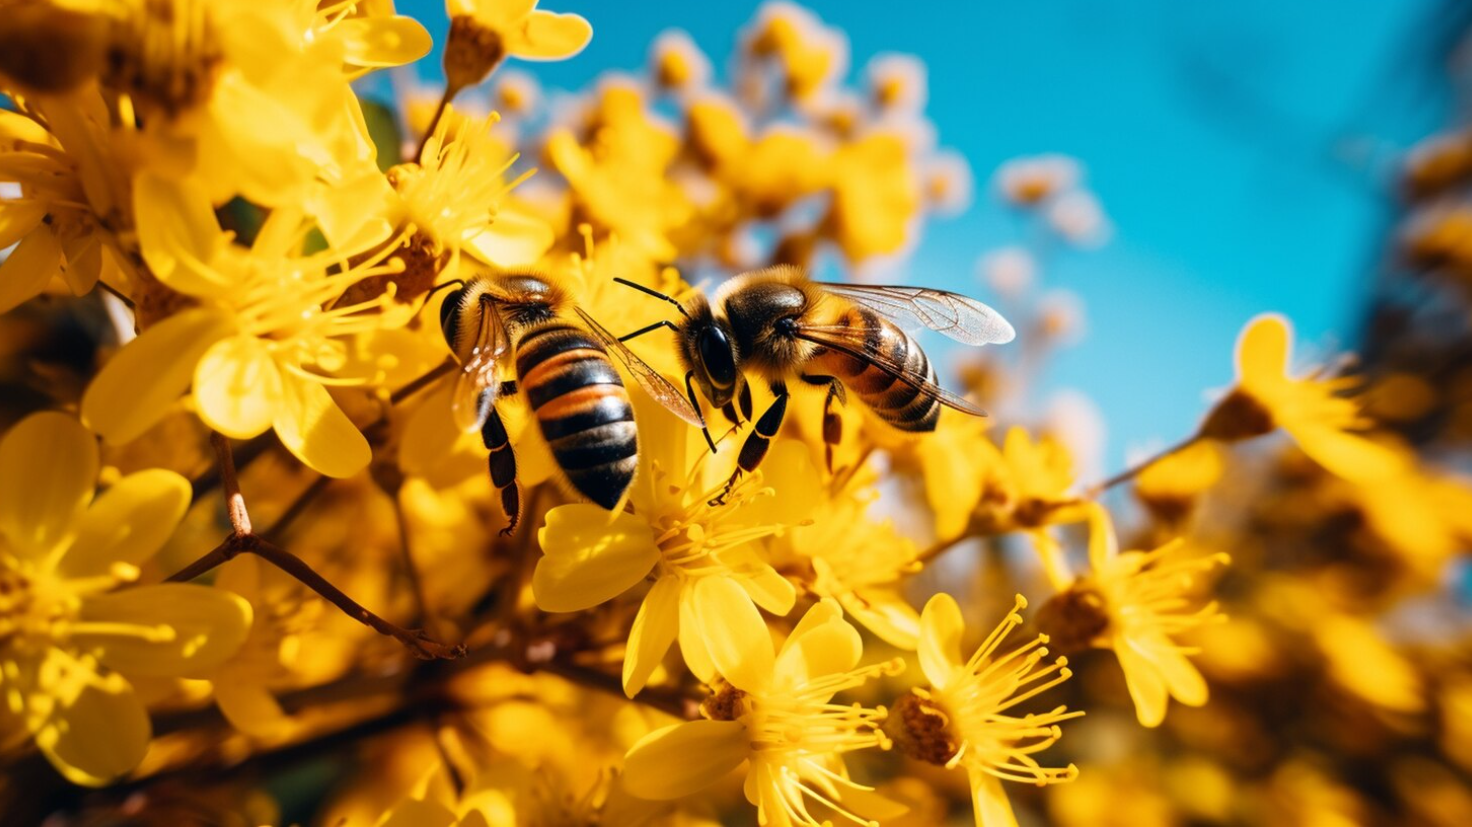 В Ростовской области предприниматели потеряли 1,5 млн рублей из-за массовой гибели пчел